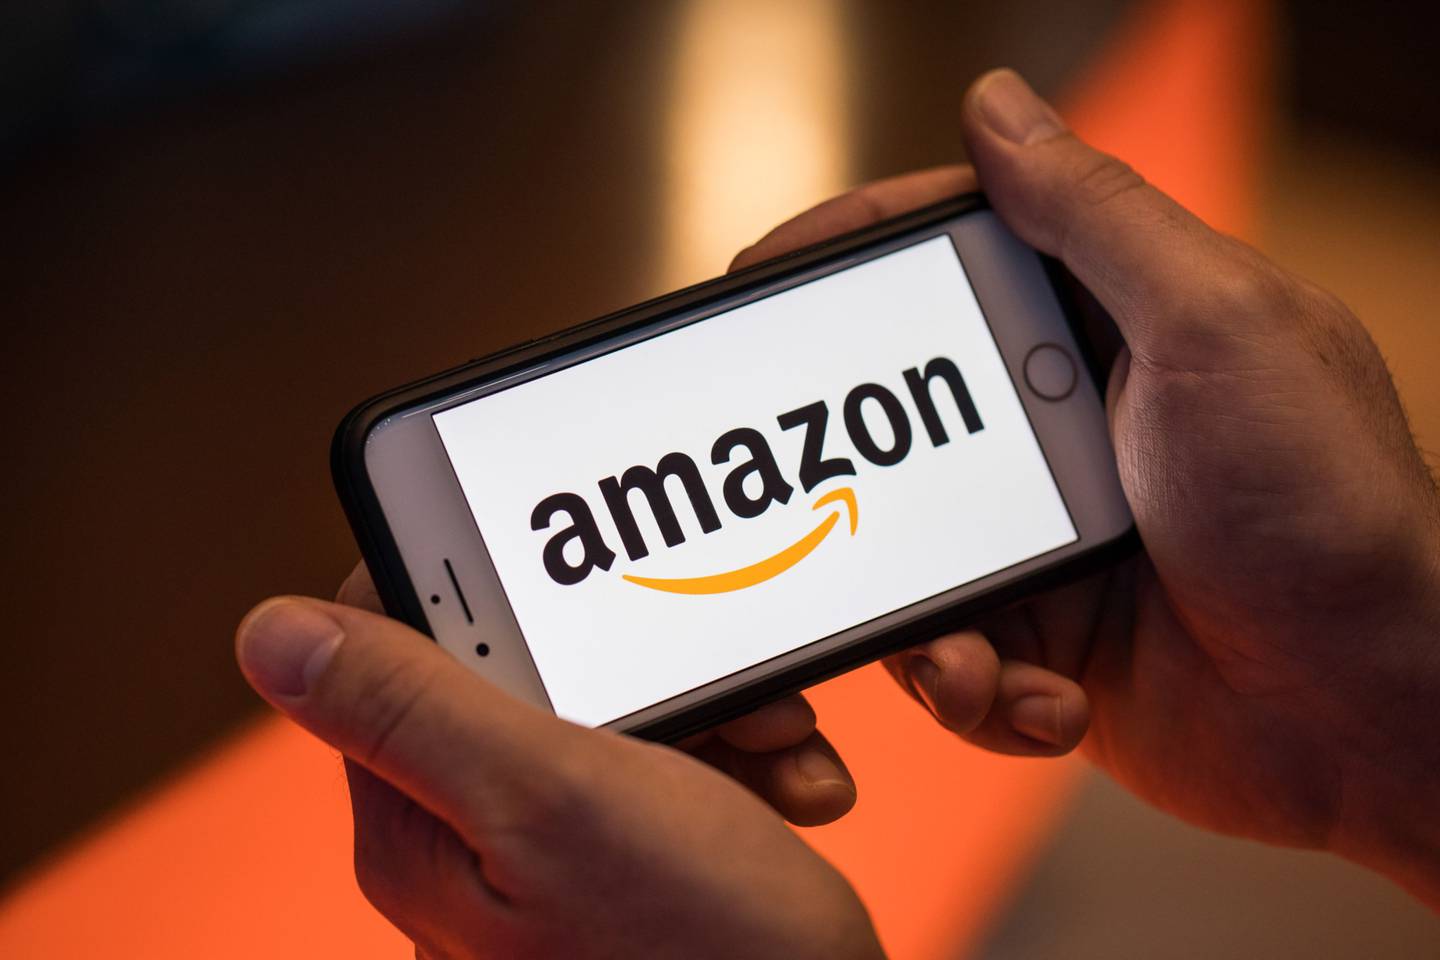 El logotipo de Amazon.com Inc. se encuentra sobre un teléfono inteligente iPhone de Apple Inc. en esta fotografía arreglada en Londres, Reino Unido, el lunes 20 de agosto de 2018. Fotógrafo: Jason Alden/Bloomberg